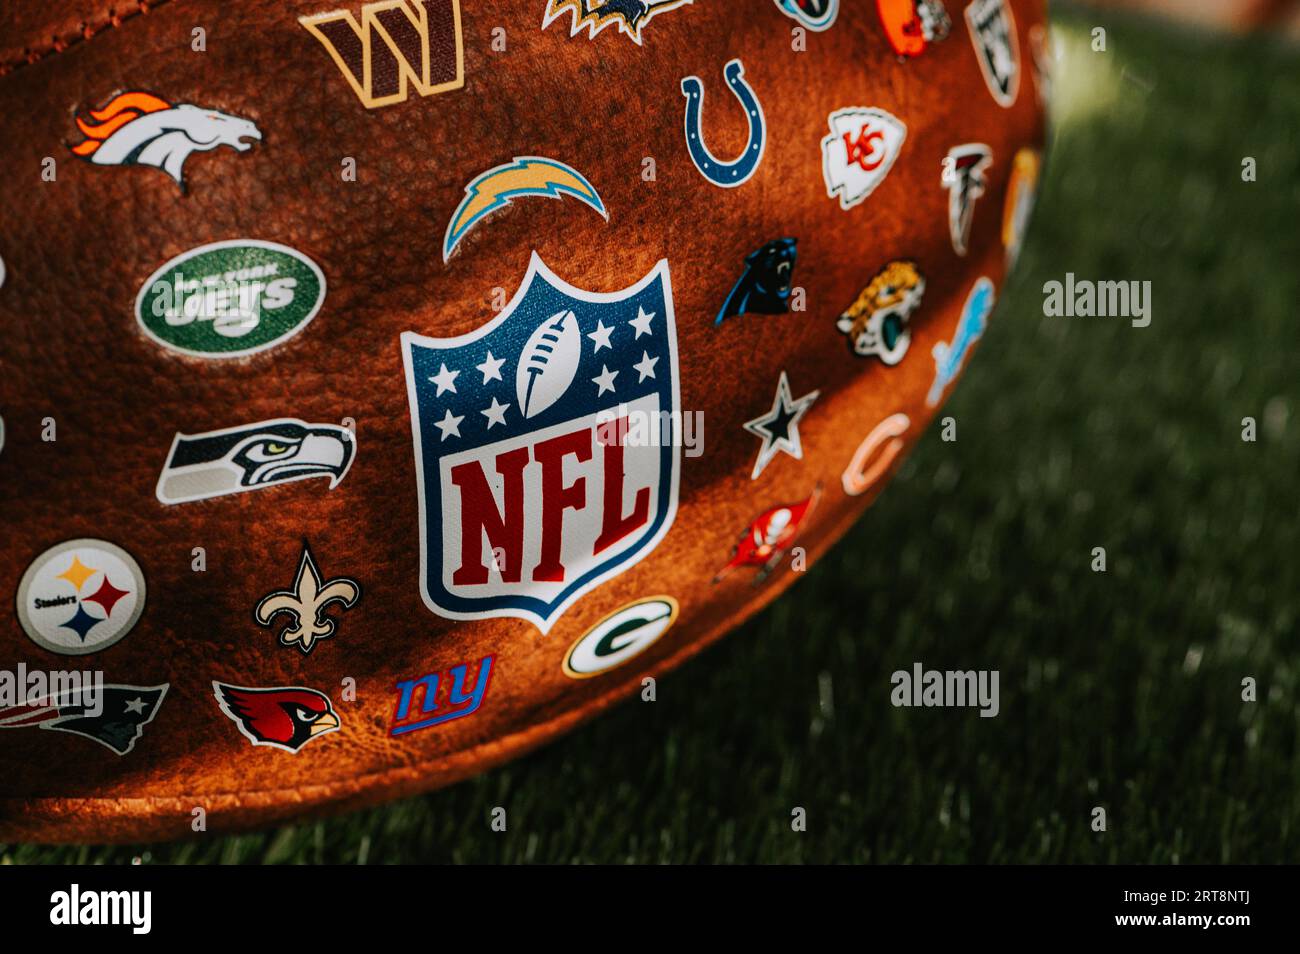 NUEVA YORK, EE.UU., 11 DE SEPTIEMBRE de 2023: Vista detallada del balón de cuero de la NFL - Balón oficial de la Liga Nacional de Fútbol con logotipos de los equipos colocados Foto de stock